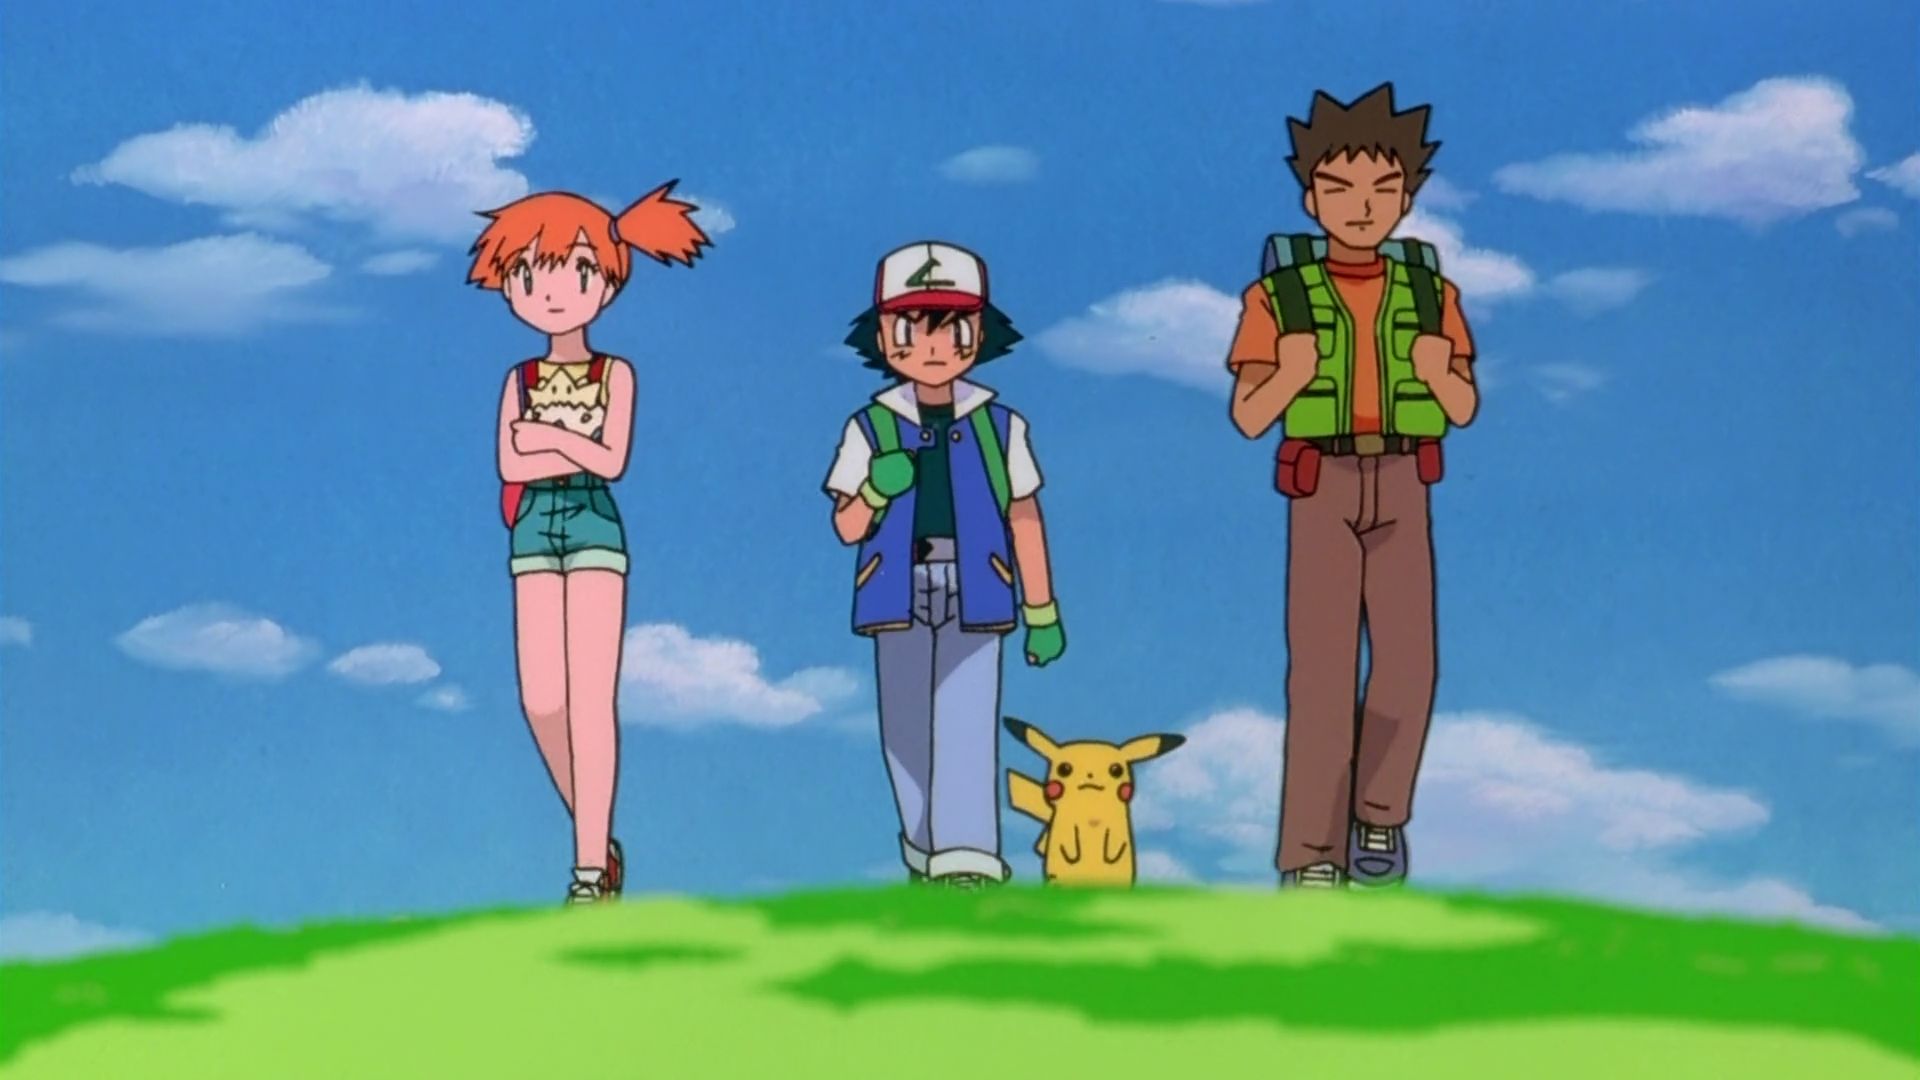 pikachu, ash ketchum, anime, pokemon 4ever: celebi voice of the forest, brock (pokémon), misty (pokémon), pokémon